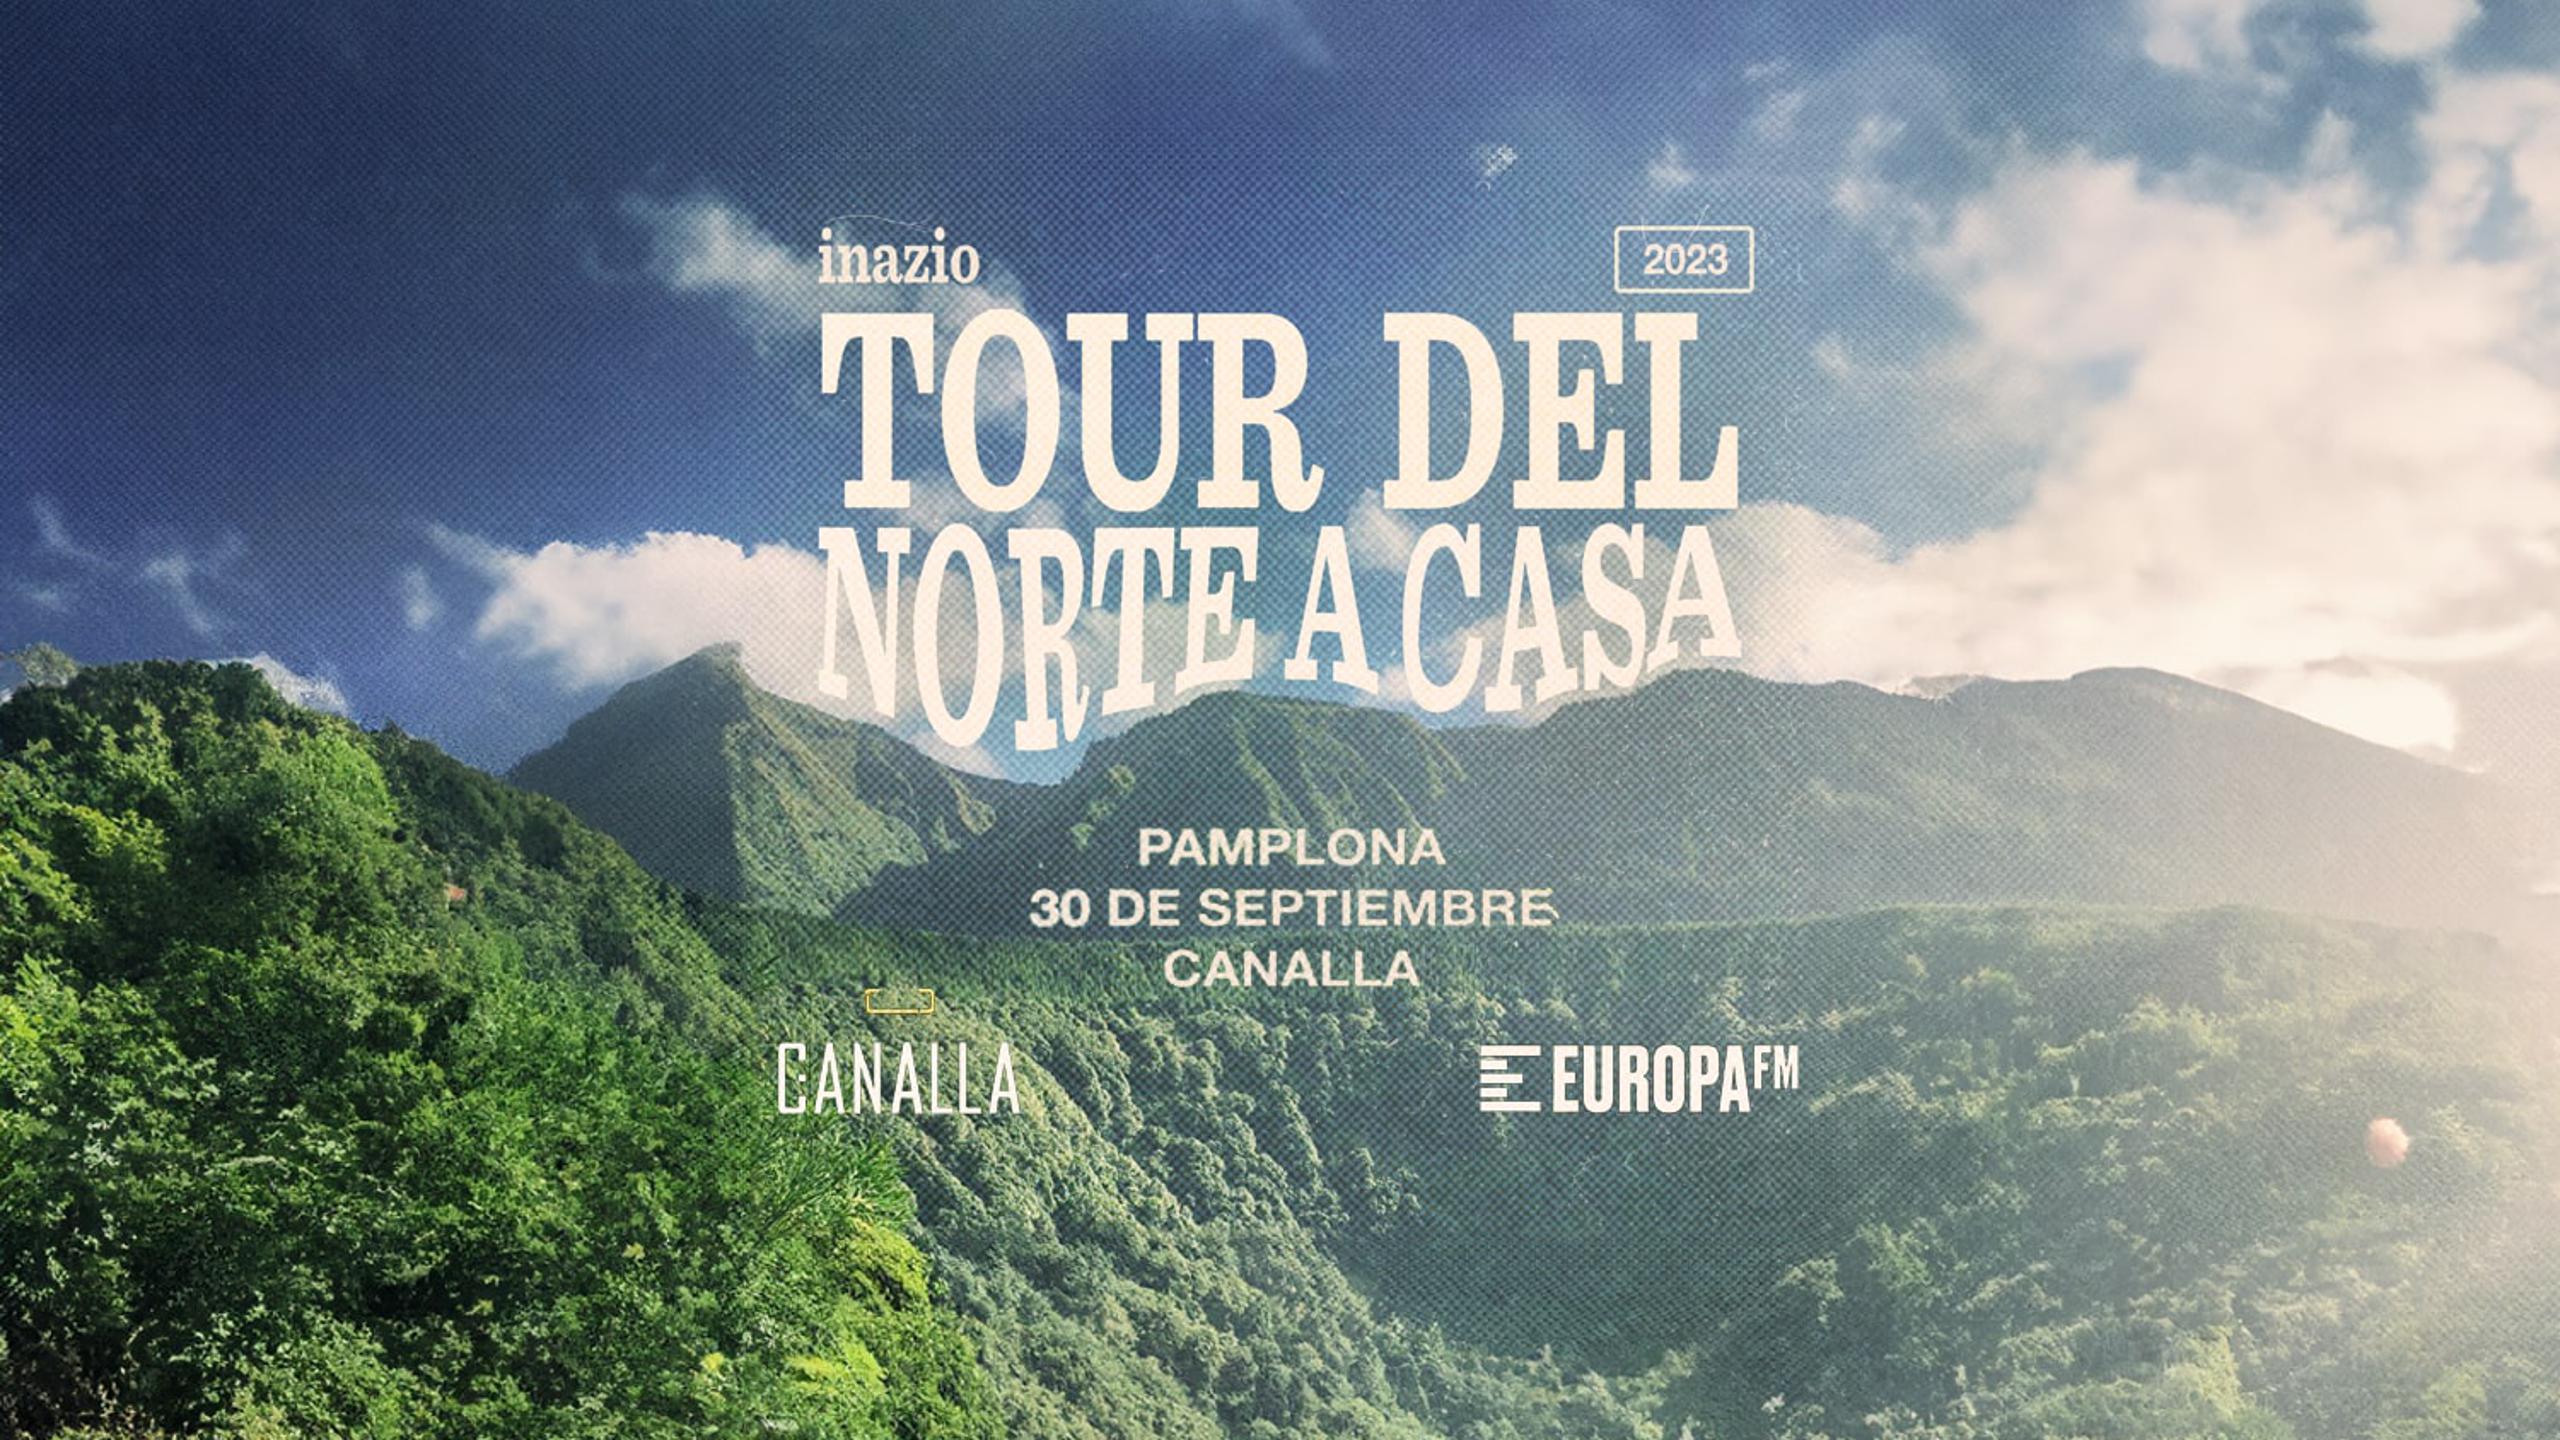 Fotografía promocional de Tour del Norte a casa INAZIO